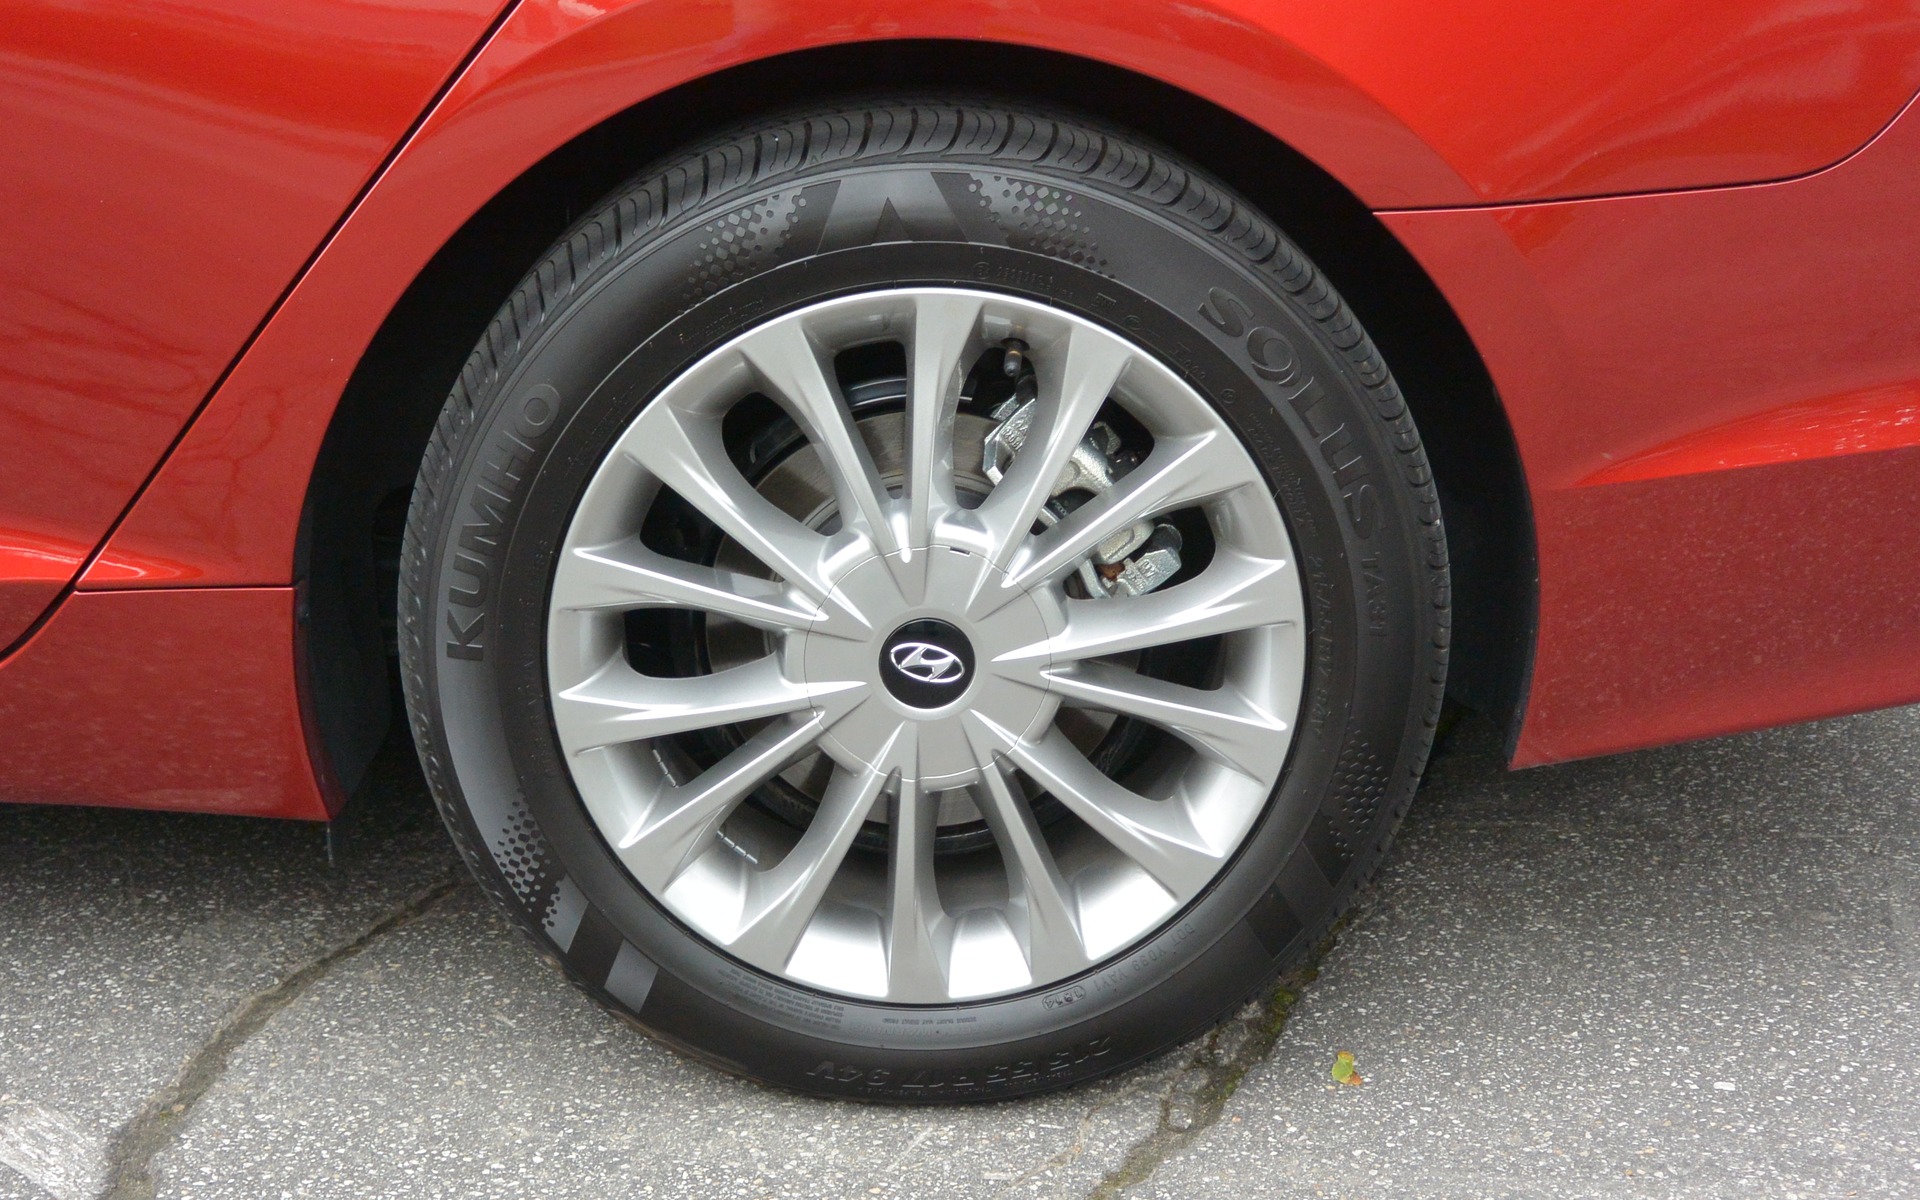 Notre voiture d'essai était équipée de pneus Khumo de 17 pouces.